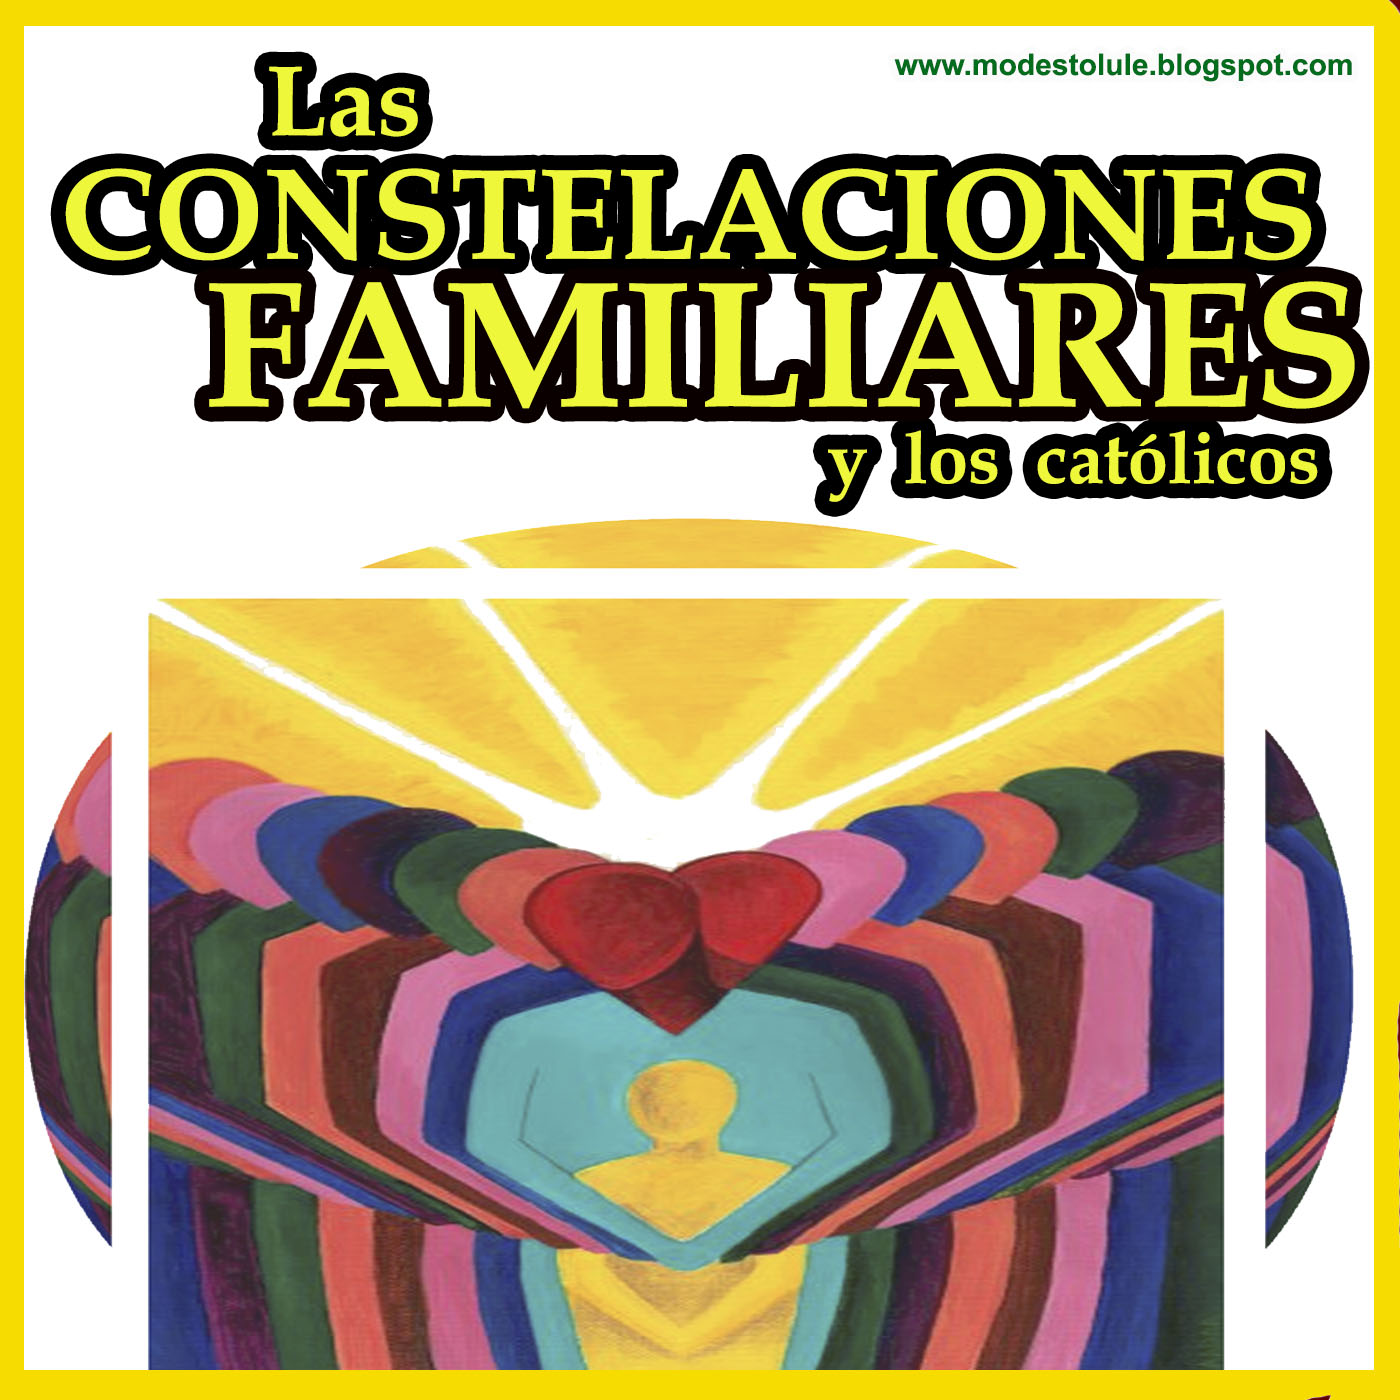 CONOCE NUESTRA FE CATOLICA: Las constelaciones familiares y los católicos